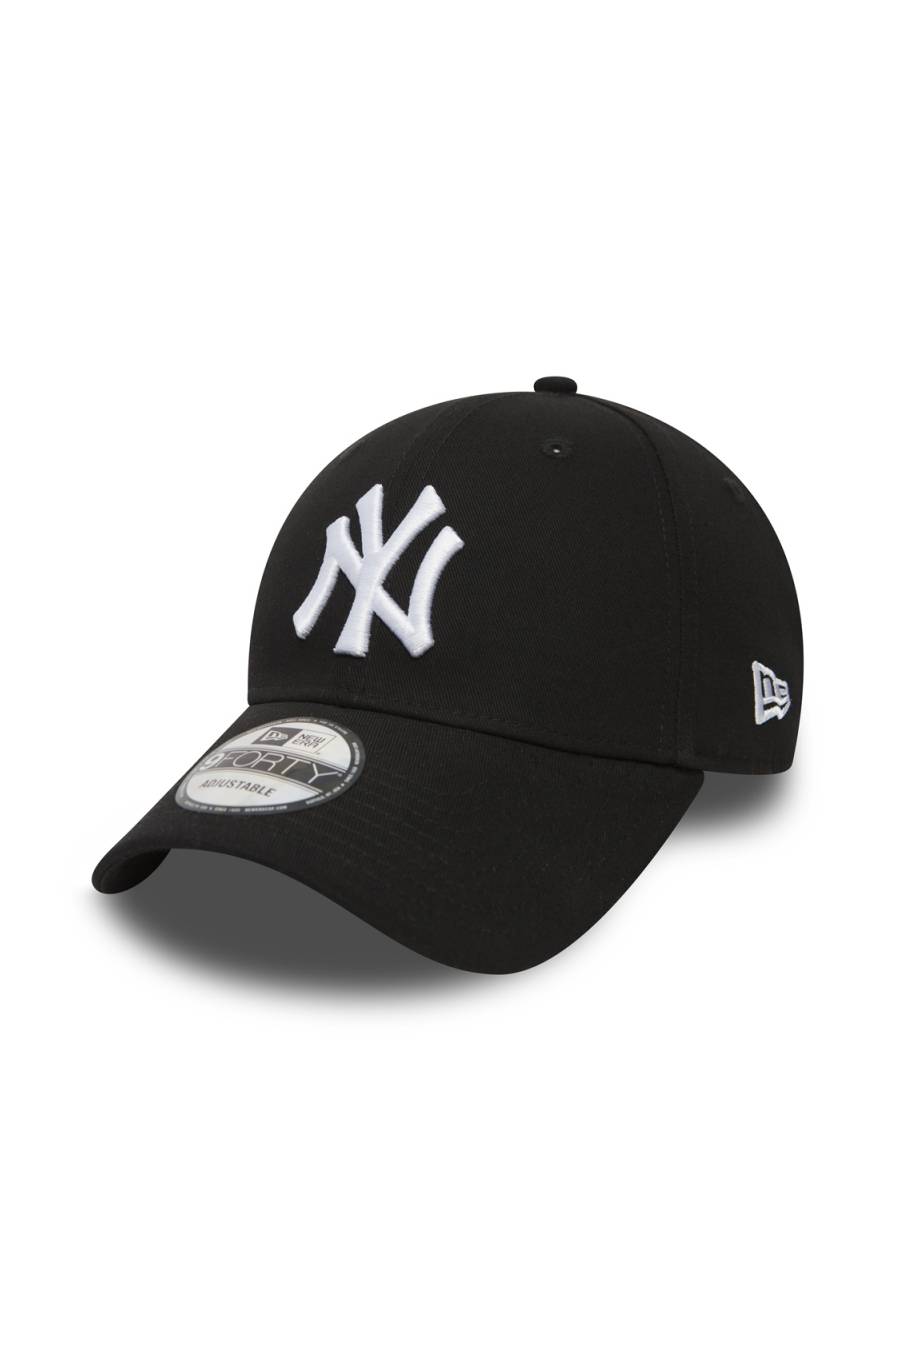 Gorra Era League Basic New York Yankees